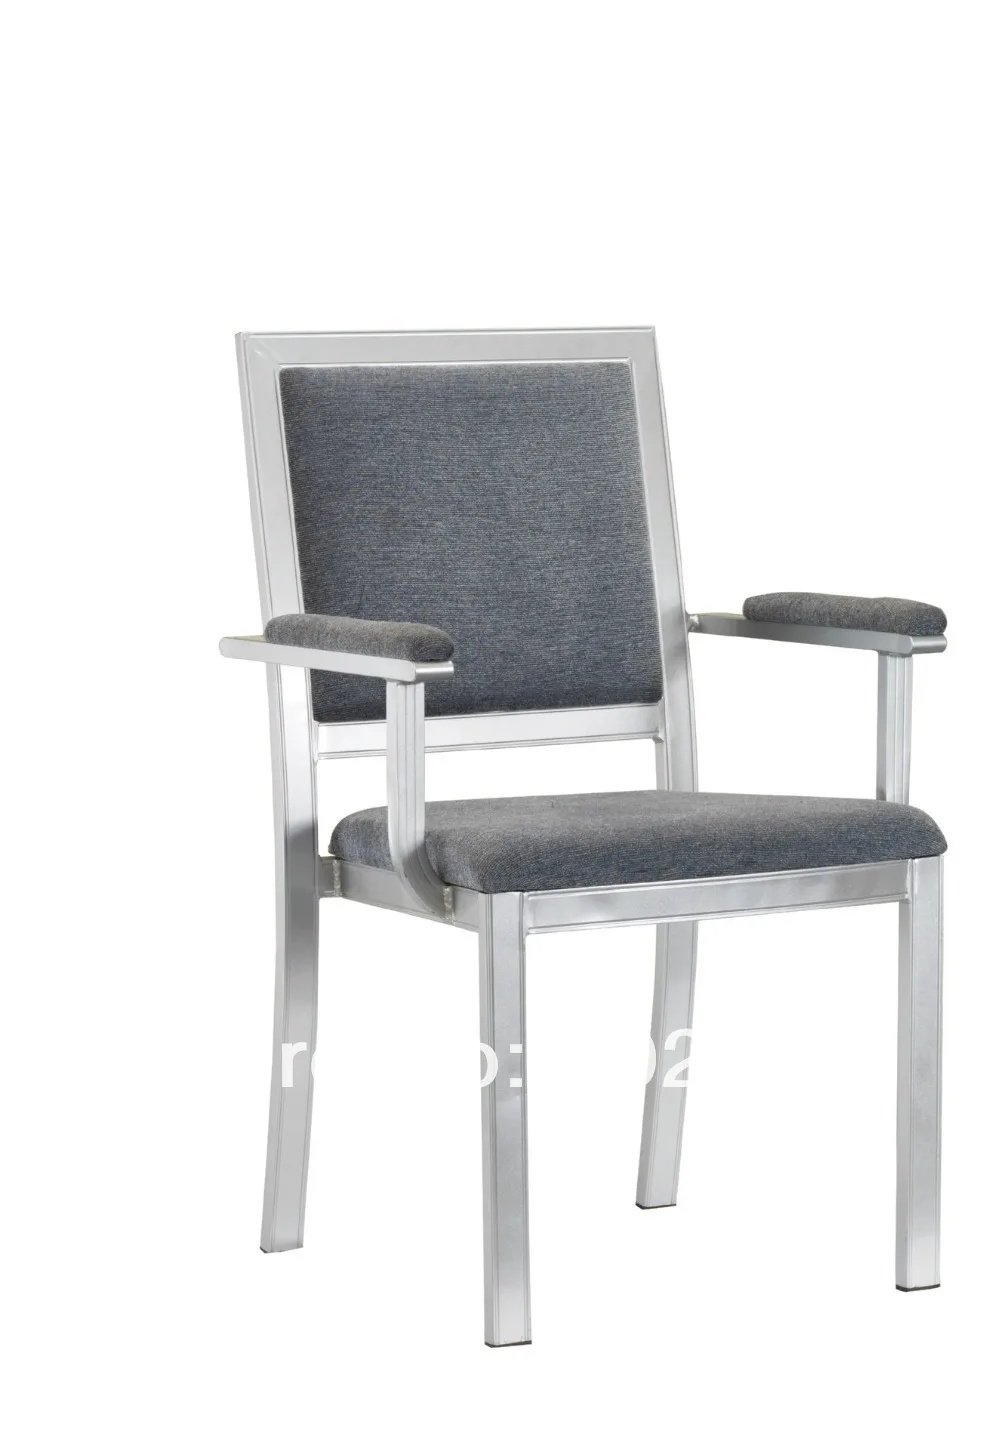 Стекируемые текстура древесины Алюминий Банкетный кресло, прочная ткань с высокой стойкостью к истиранию, удобные